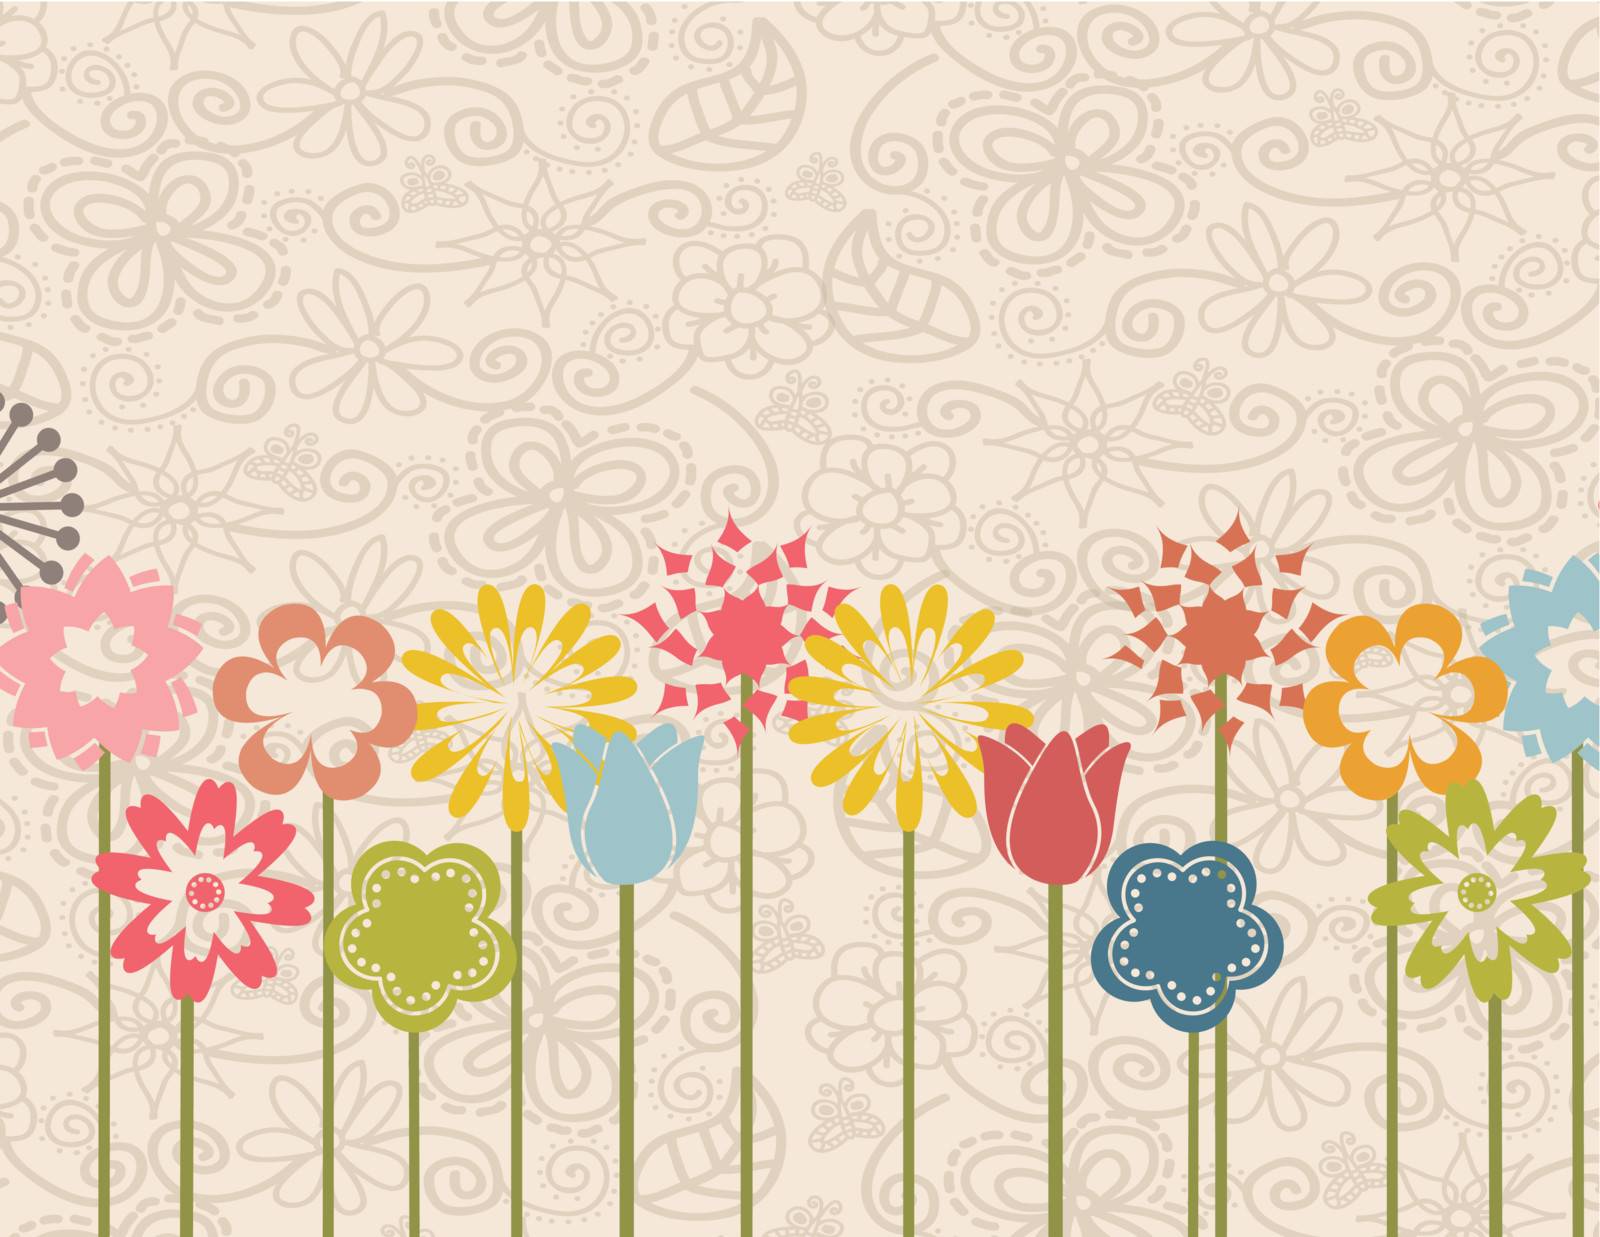 Garden over flower background vector illustration